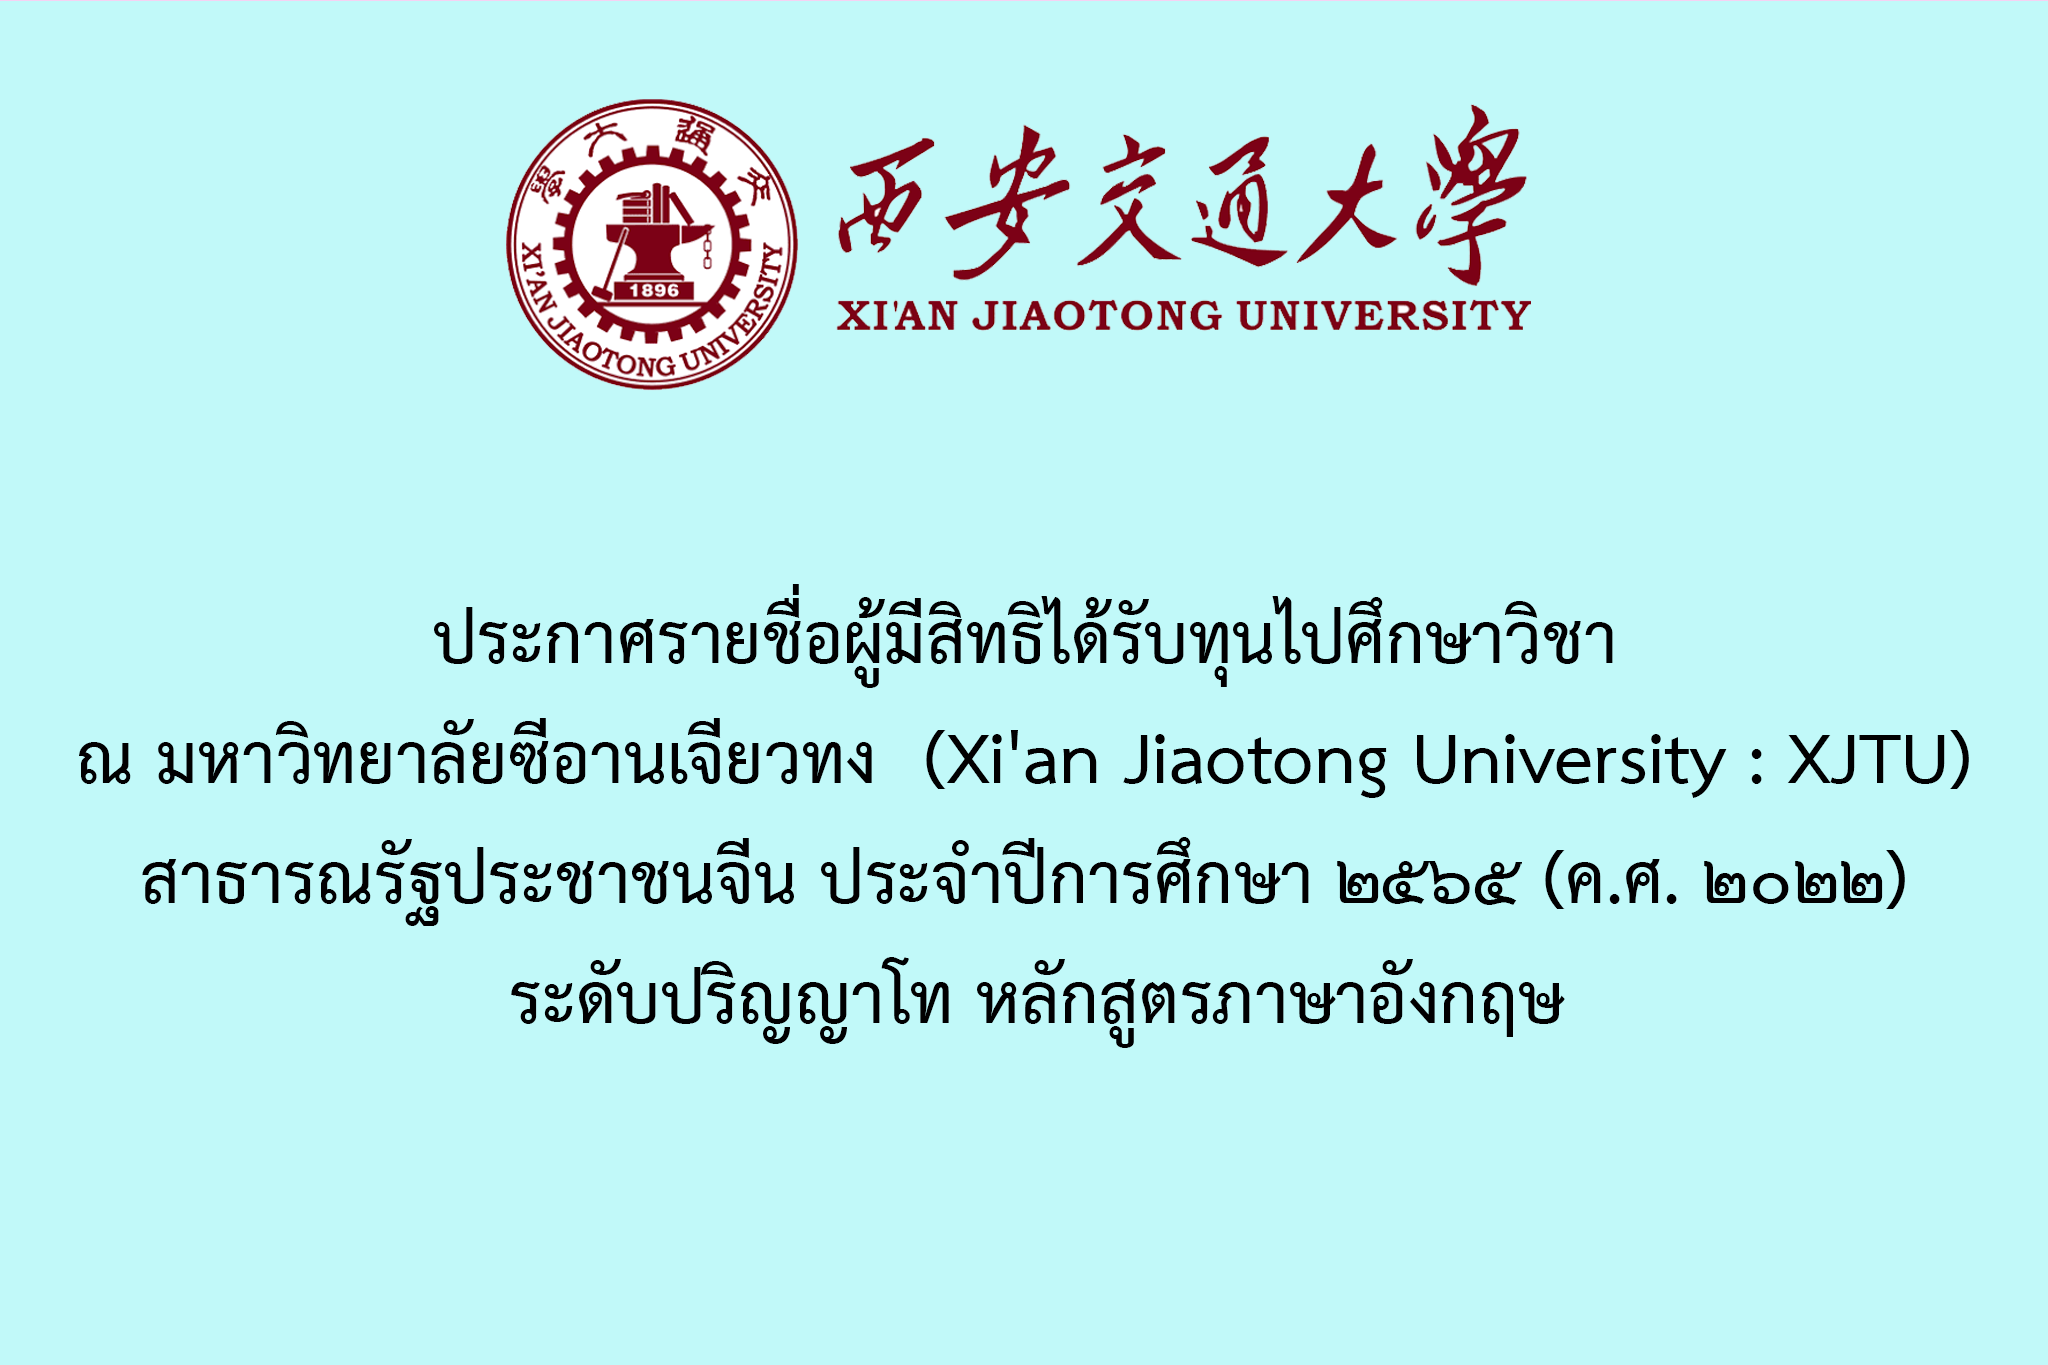 ประกาศรายชื่อผู้มีสิทธิได้รับทุนไปศึกษาวิชา ณ มหาวิทยาลัยซีอานเจียวทง (Xi'an Jiaotong University : XJTU) สาธารณรัฐประชาชนจีน ประจำปีการศึกษา ๒๕๖๕ (ค.ศ. ๒๐๒๒) ระดับปริญญาโท หลักสูตรภาษาอังกฤษ